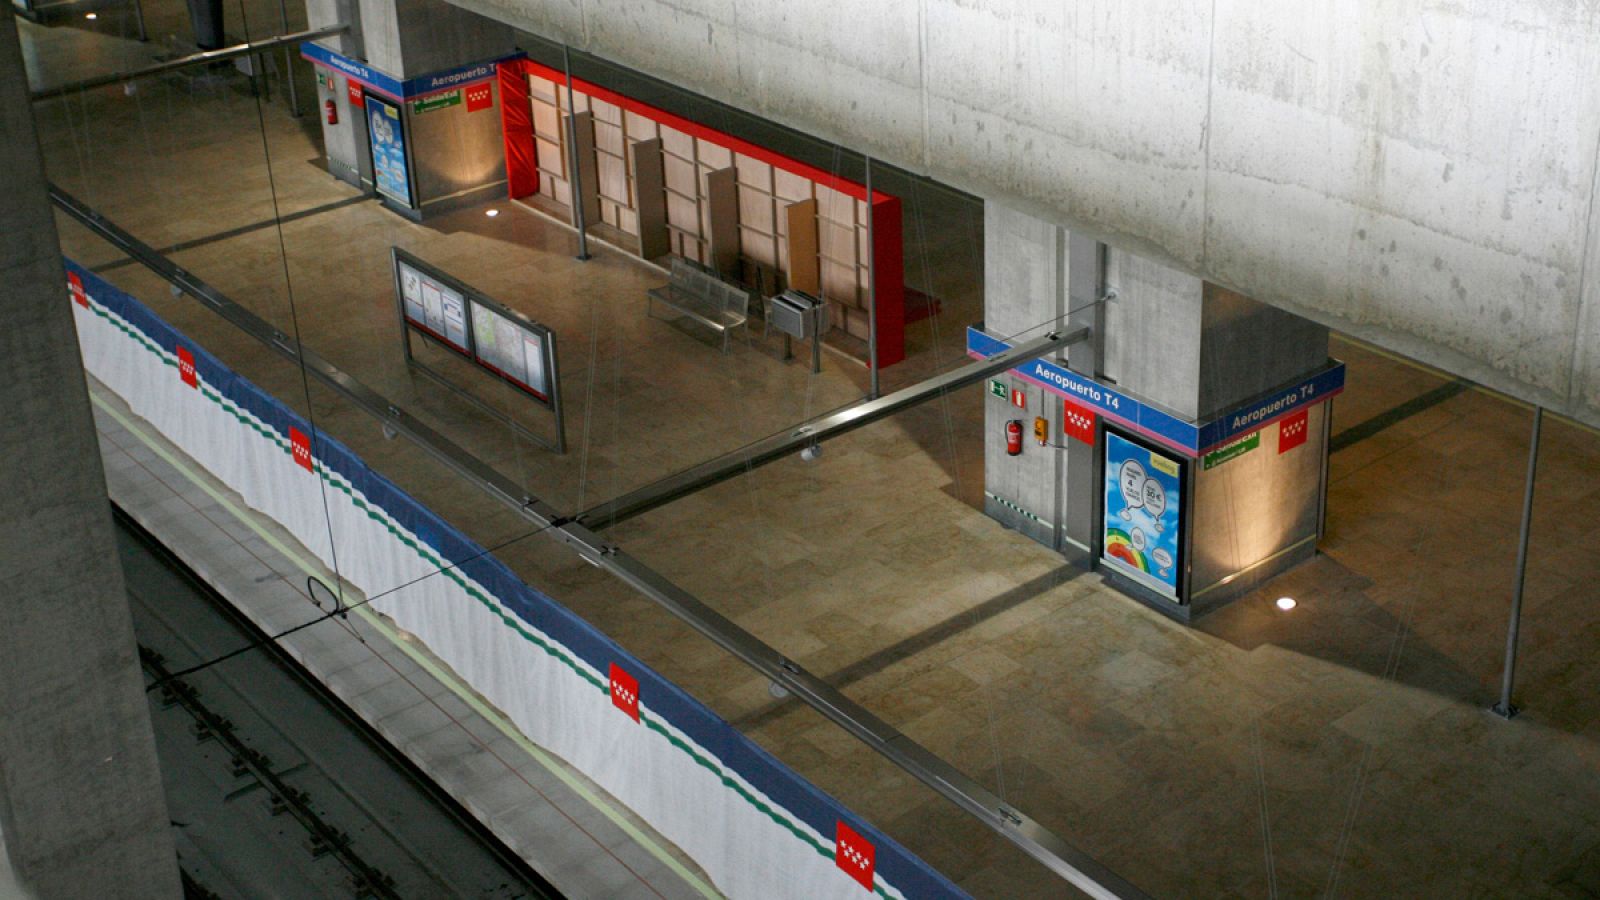 La estación de metro en la Terminal 4 del aeropuerto Adolfo Suárez Madrid-Barajas